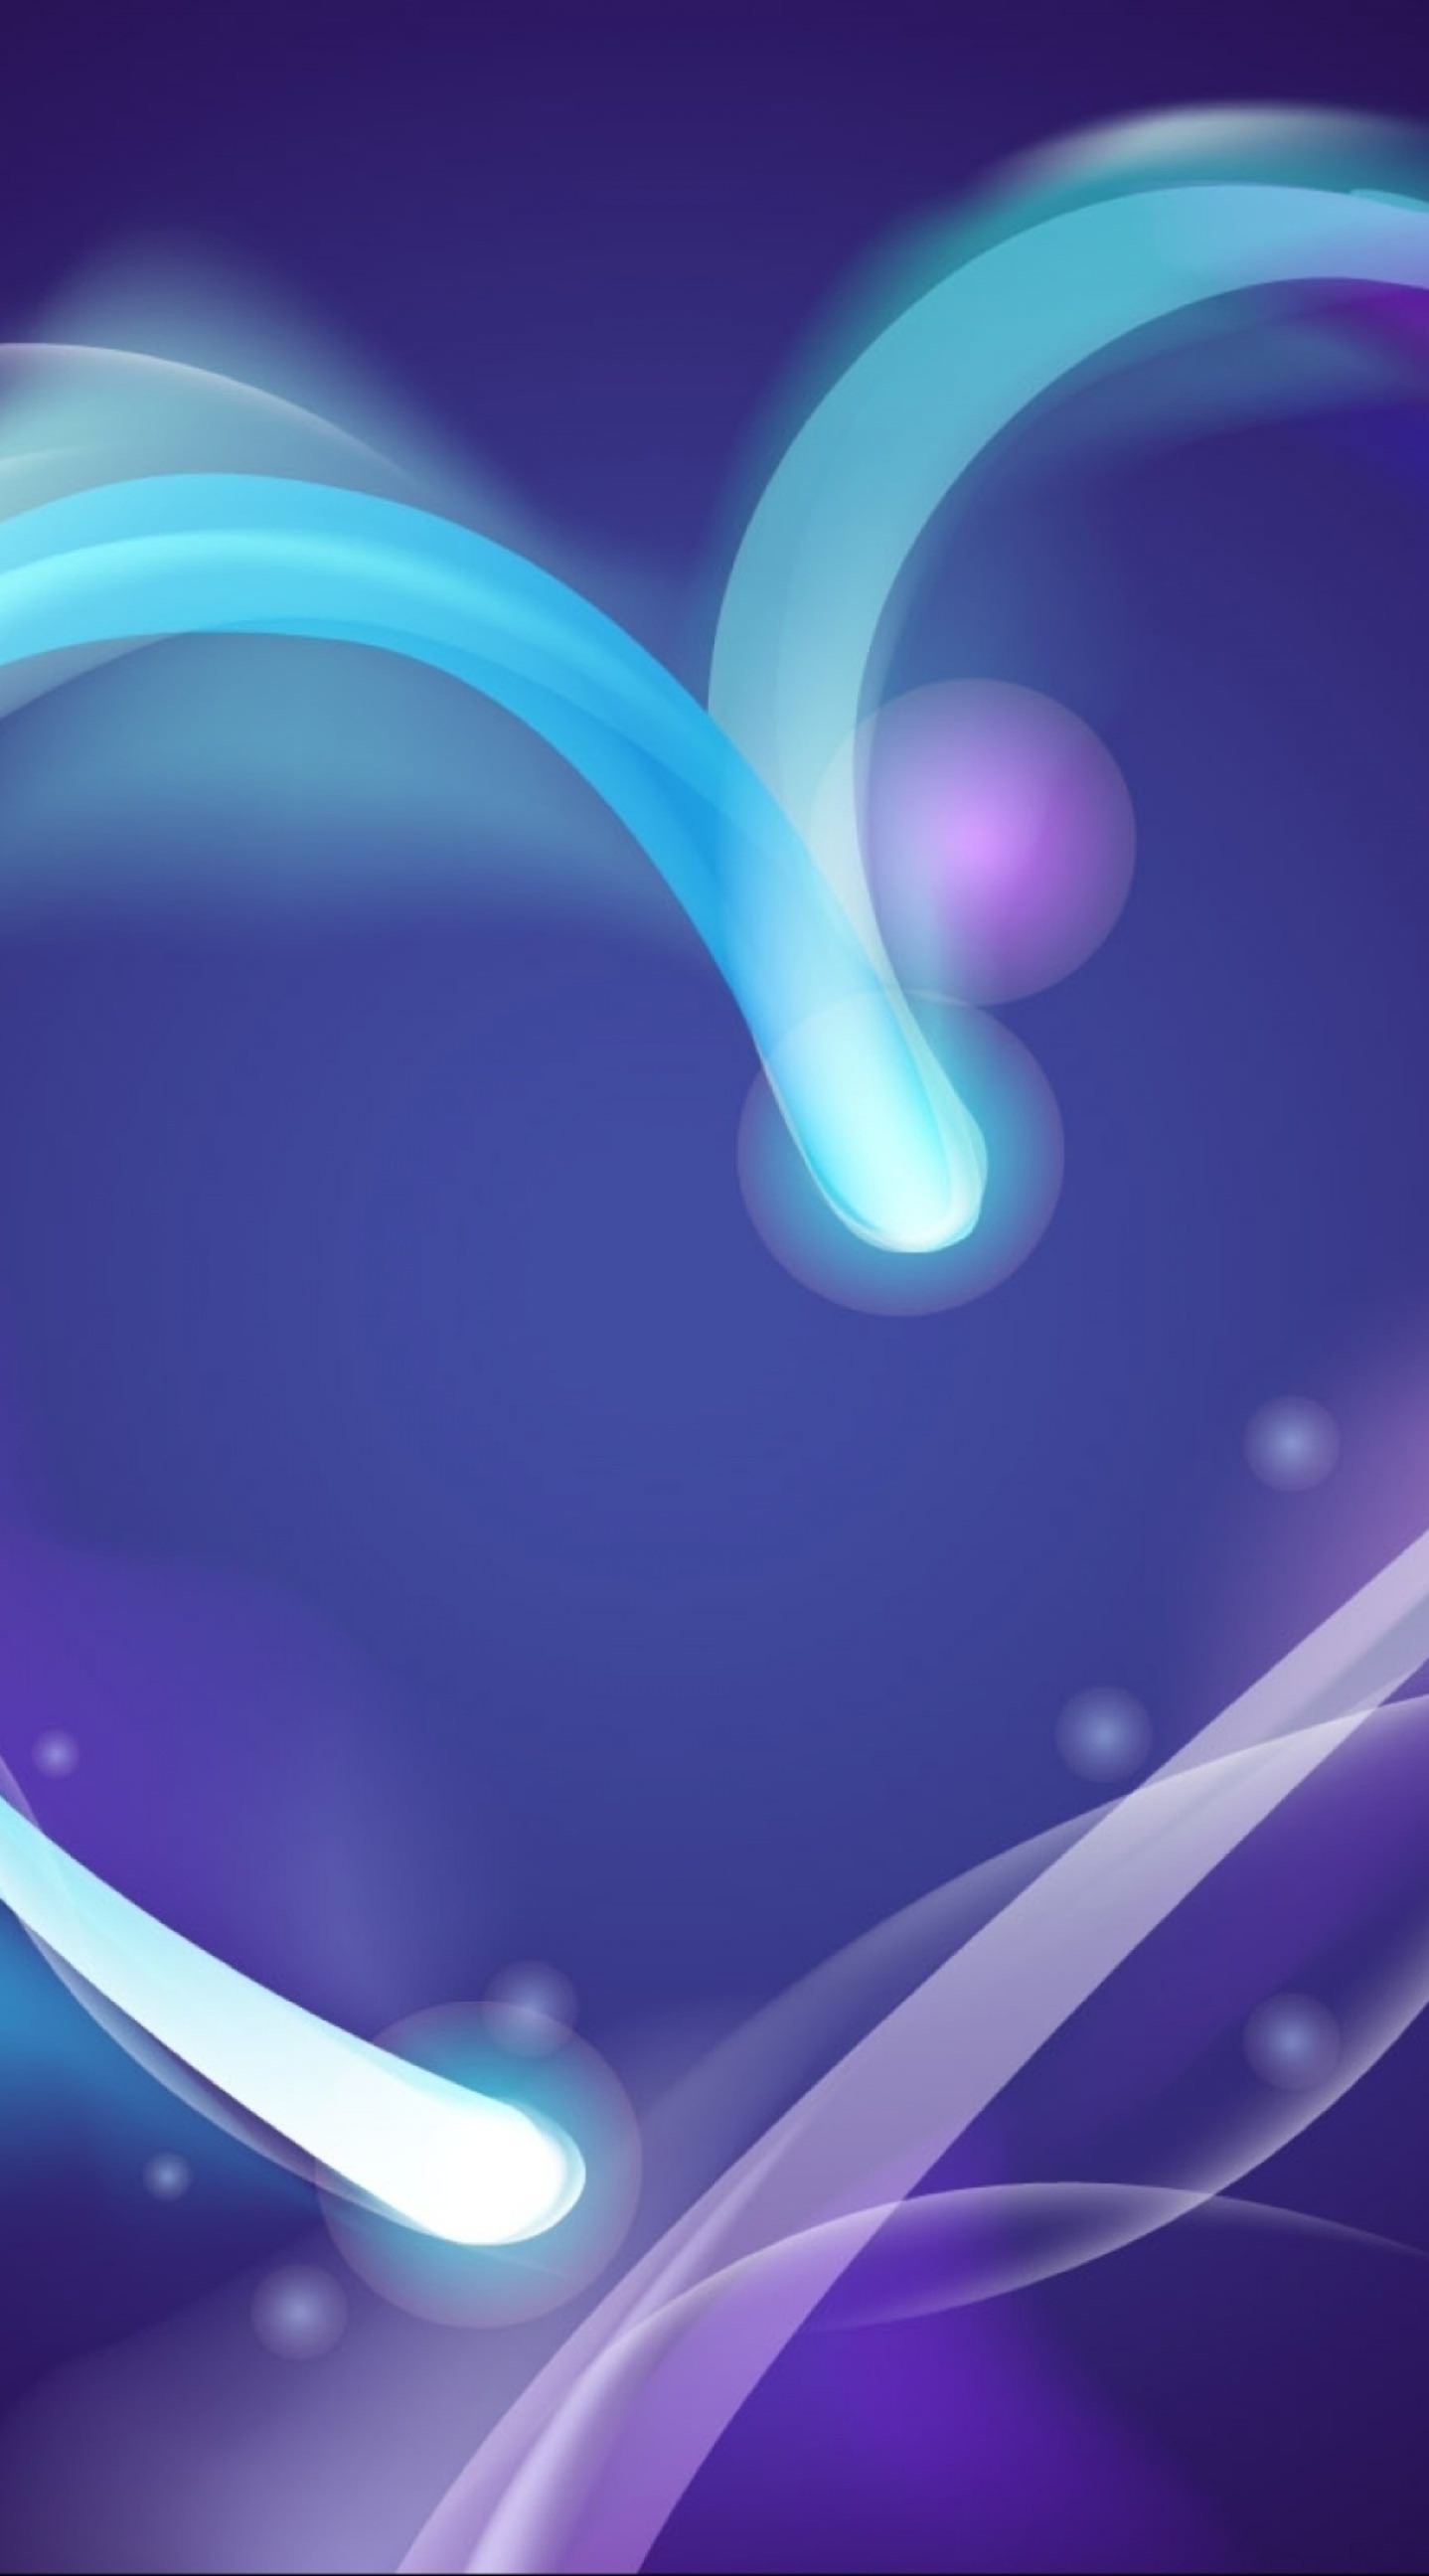 fondo de pantalla relacionado con el amor,azul,violeta,púrpura,ligero,diseño gráfico